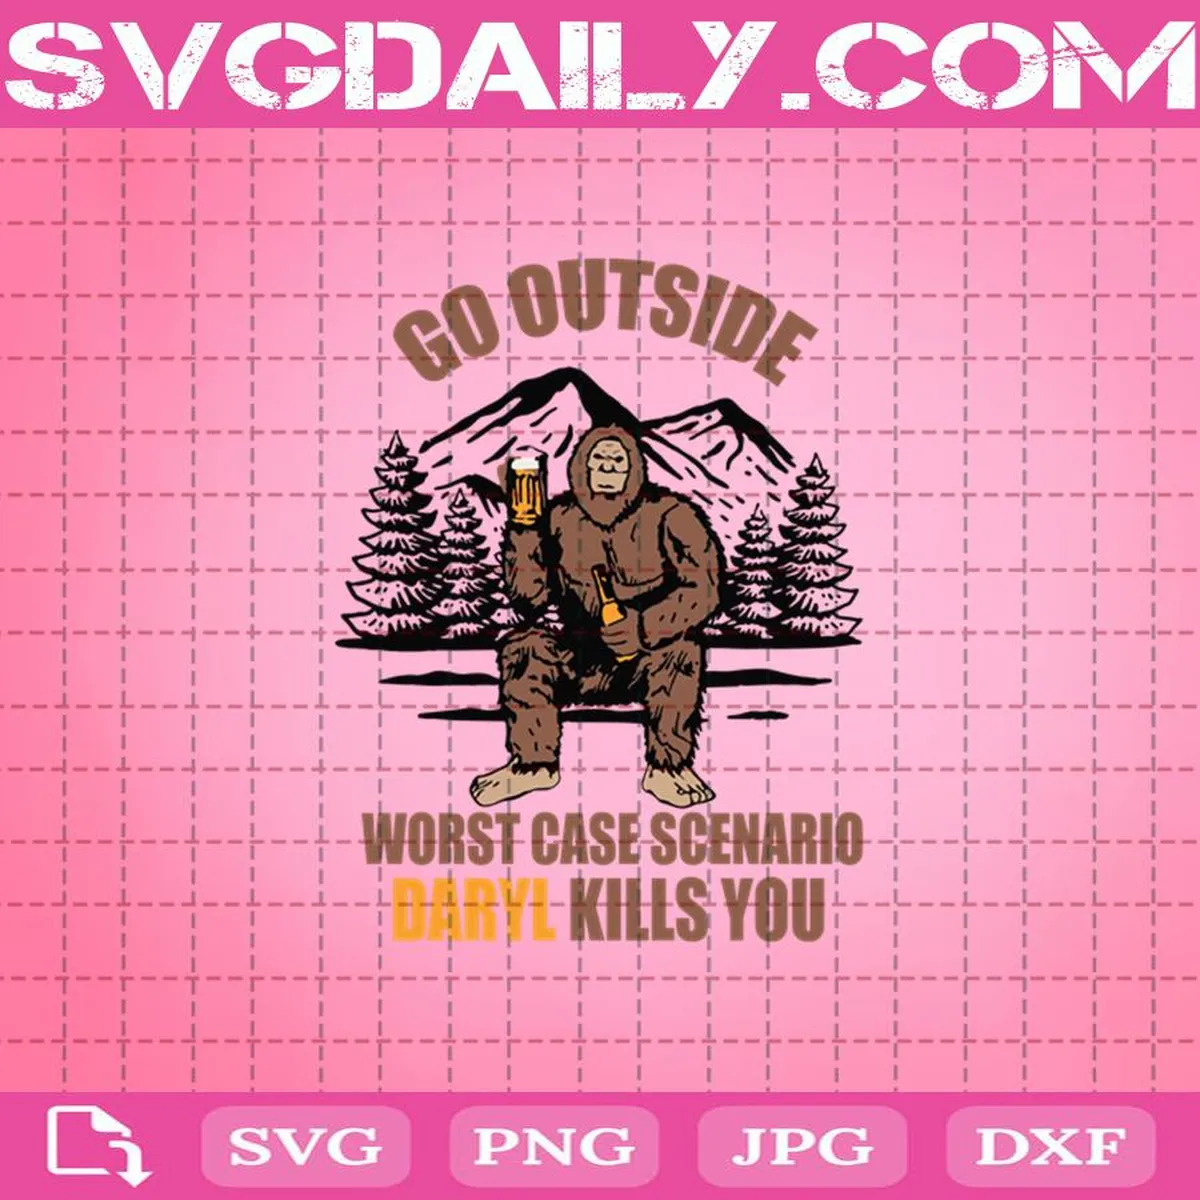 Bigfoot Go Outside Worst Case Scenario Darry Kills You Svg, Bigfoot Svg, Bigfoot Drinking Beer Svg, Go Outside Svg